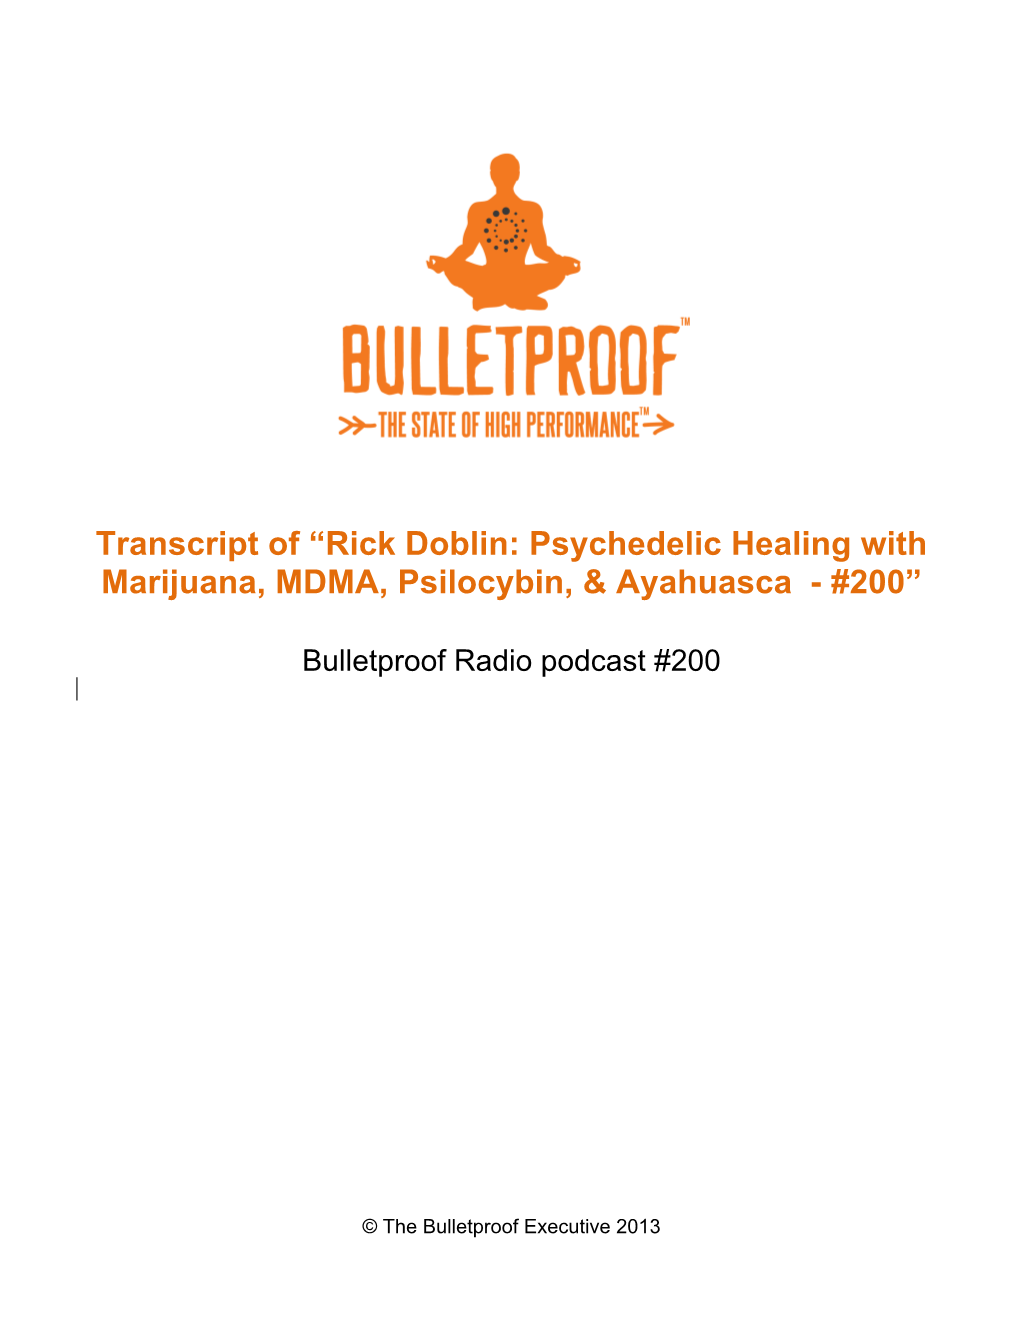 Transcript of “Rick Doblin: Psychedelic Healing with Marijuana, MDMA, Psilocybin, & Ayahuasca - #200”